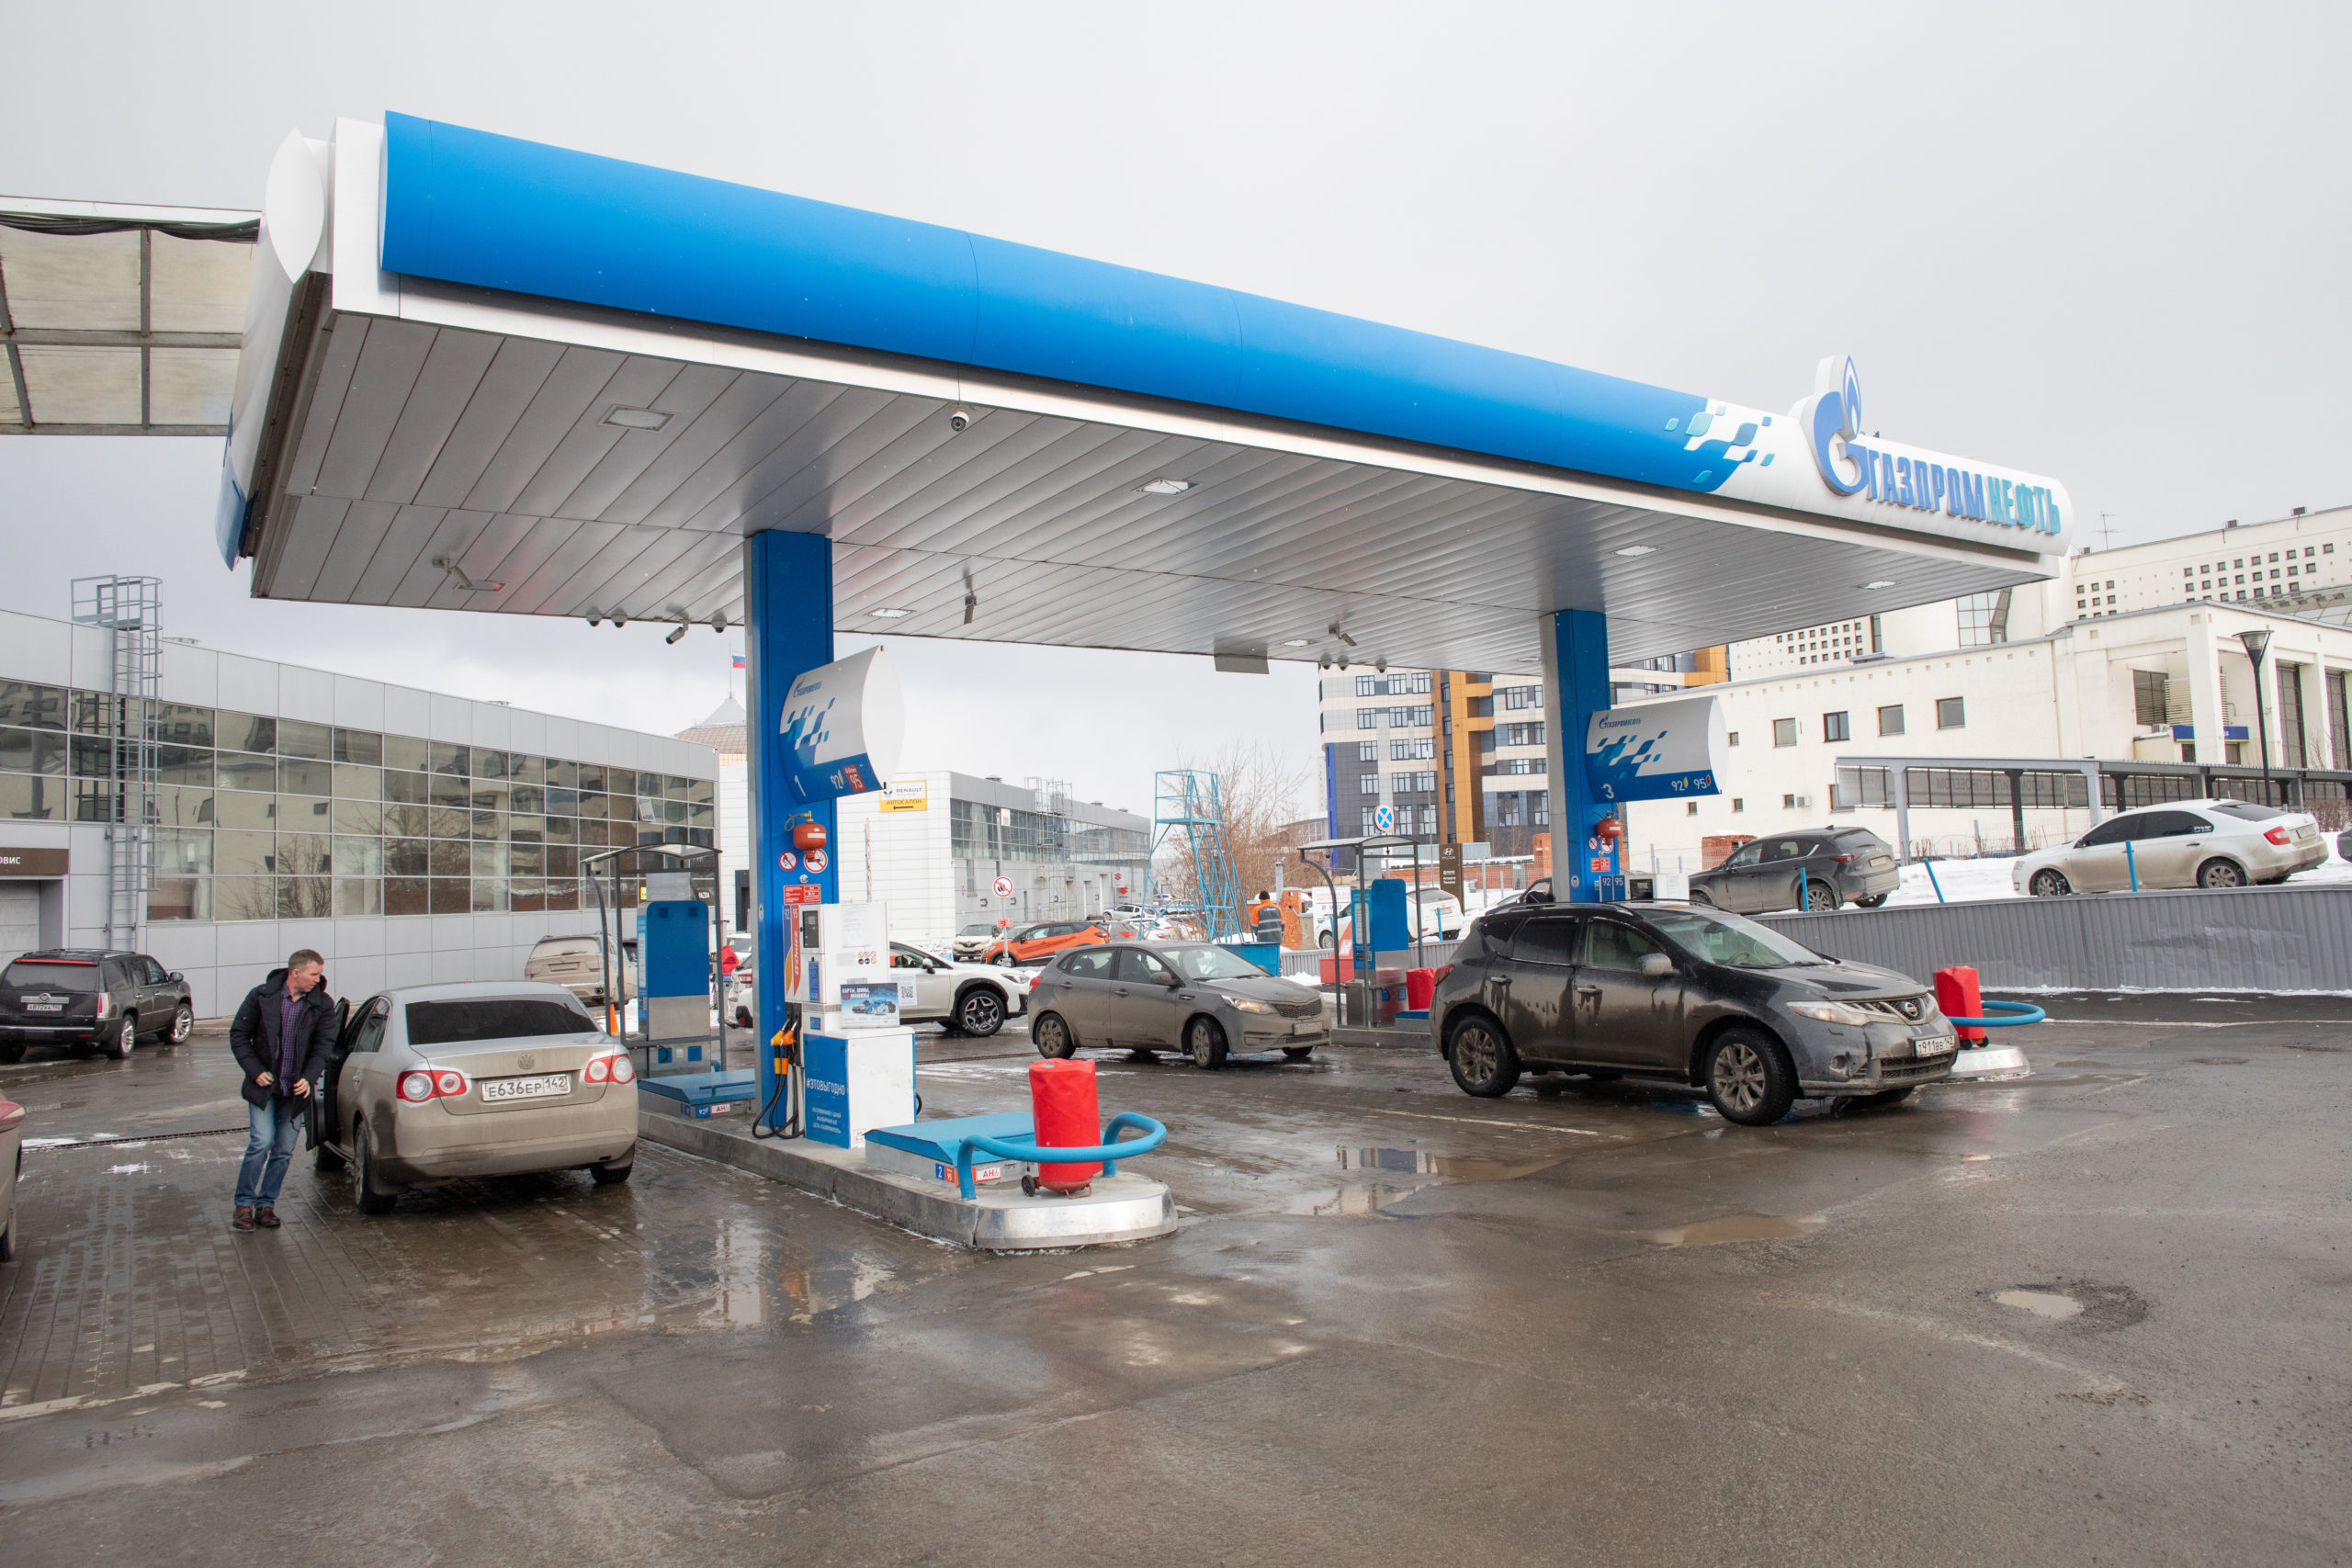 Цены на бензин и дизель в России проходят через взлёты и падения